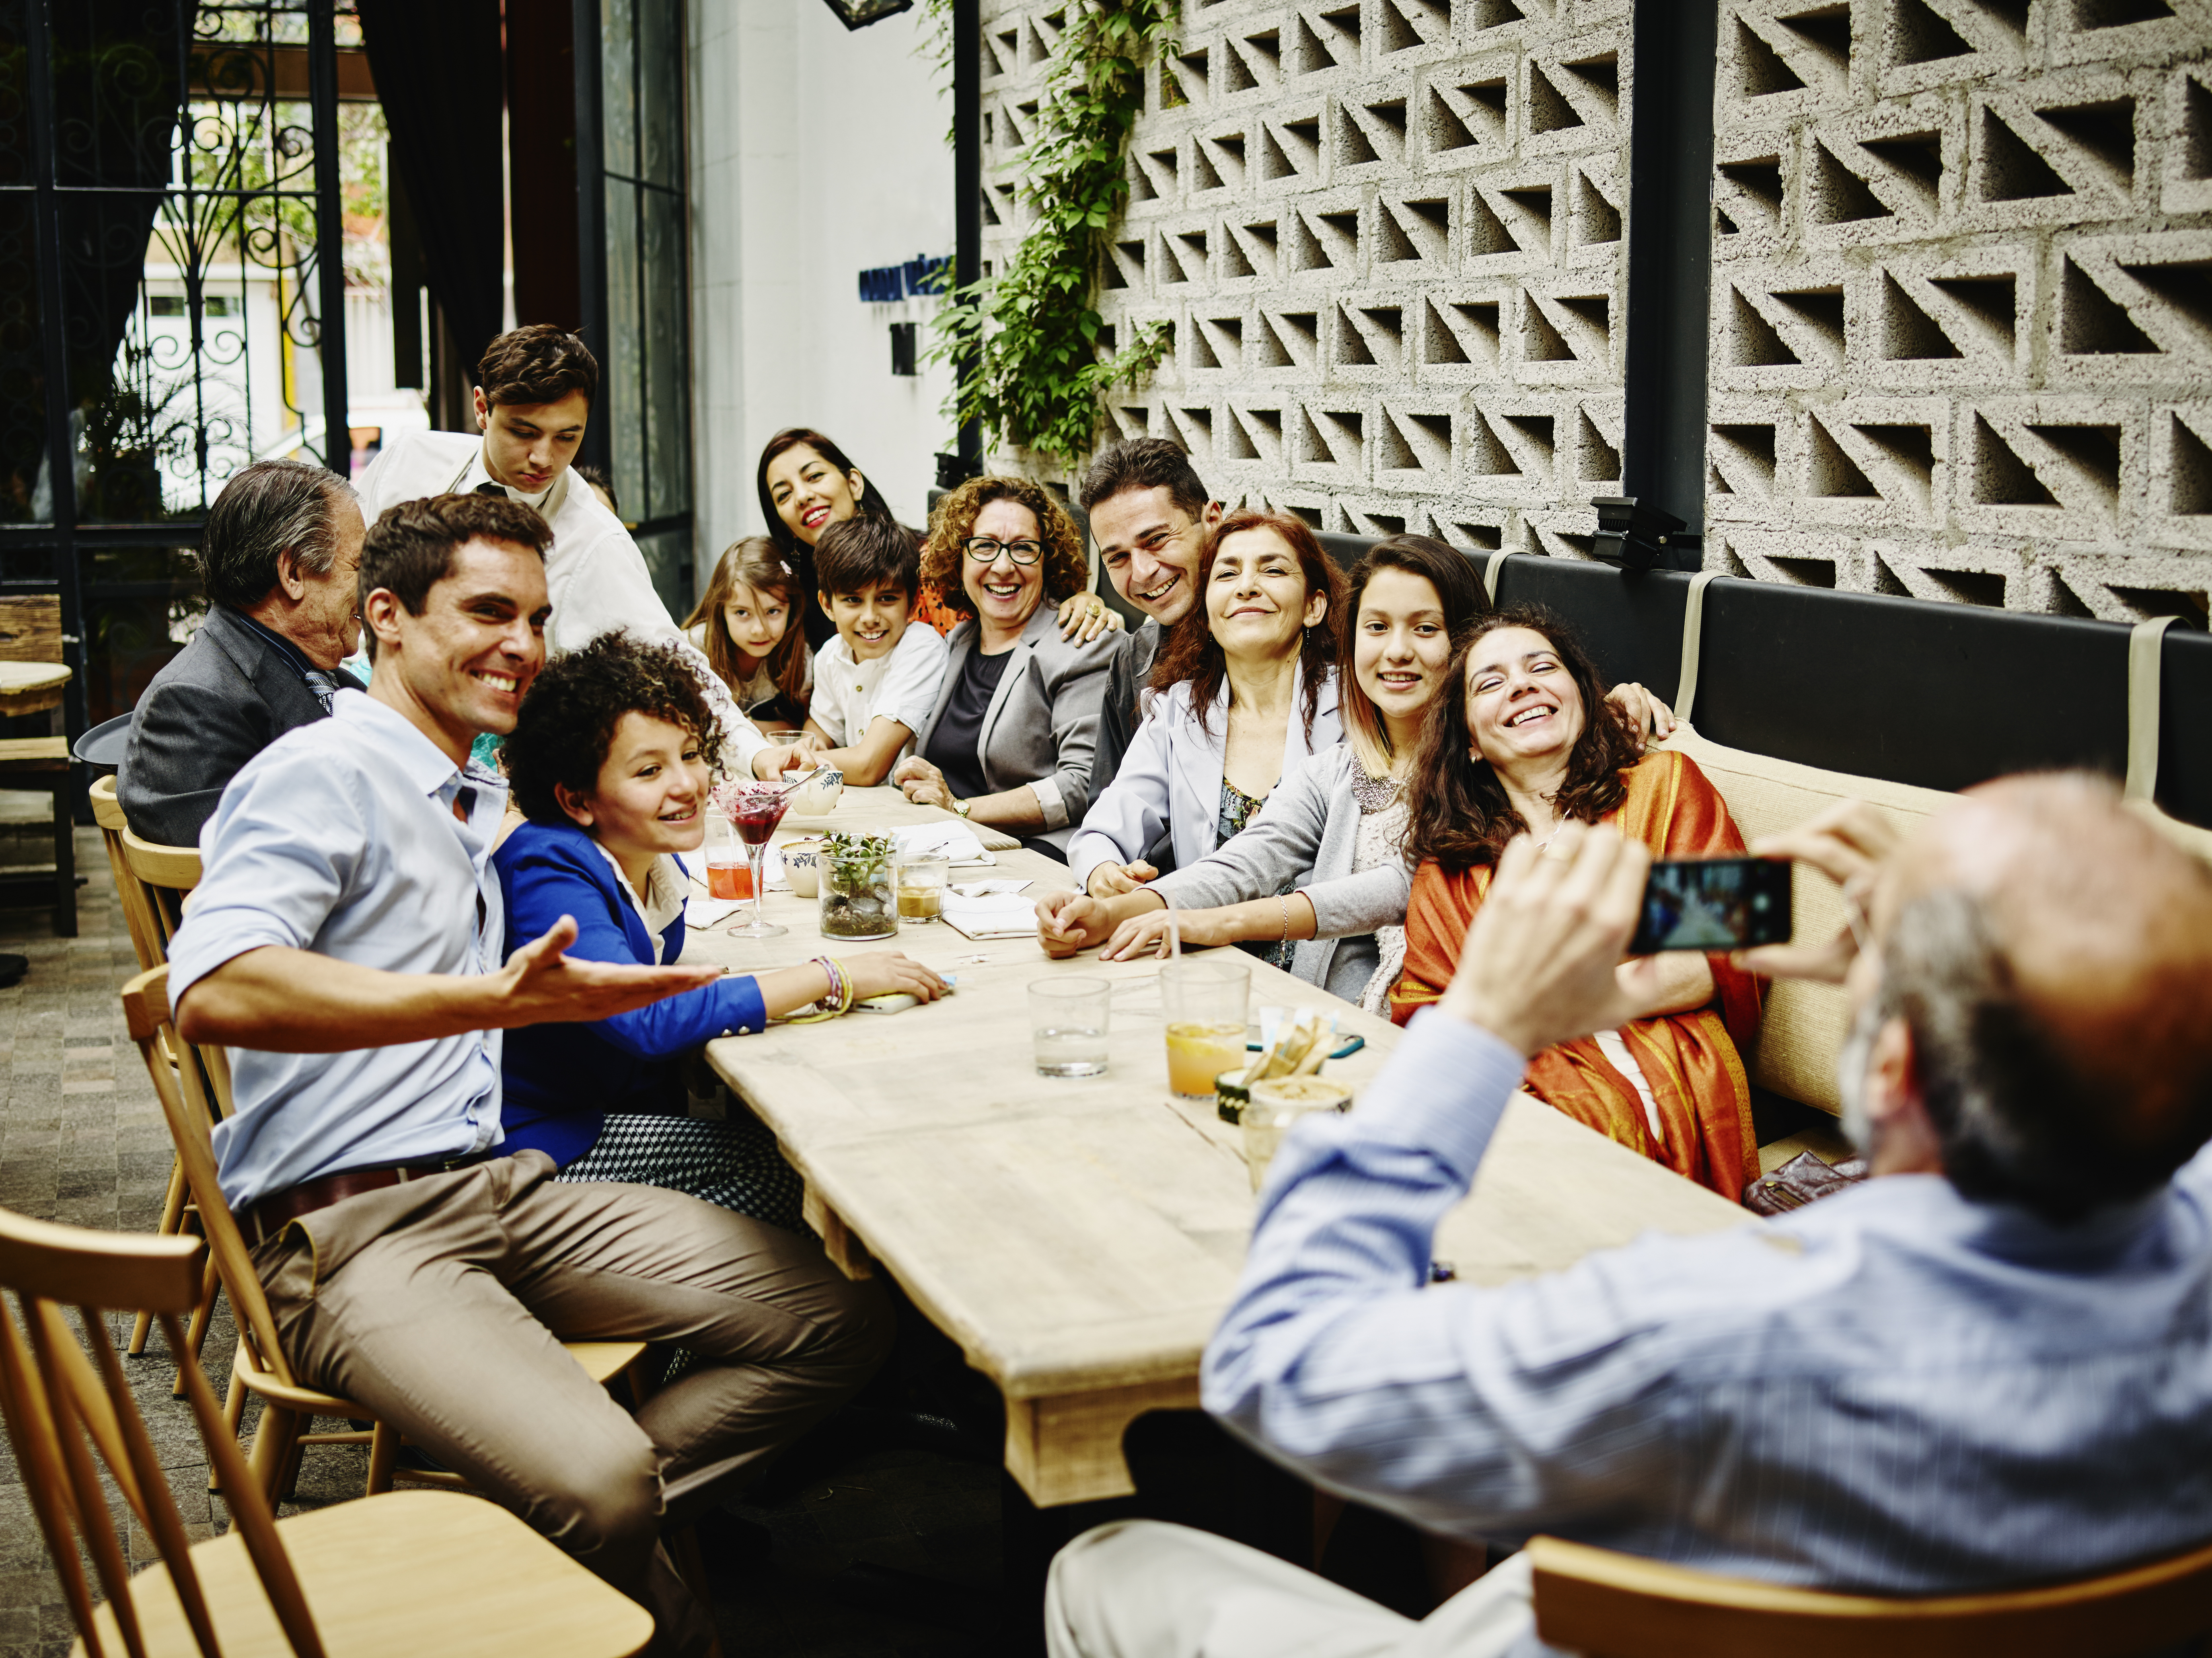 Homme prenant une photo lors d'une grande réunion de famille dans un restaurant | Source : Getty Images